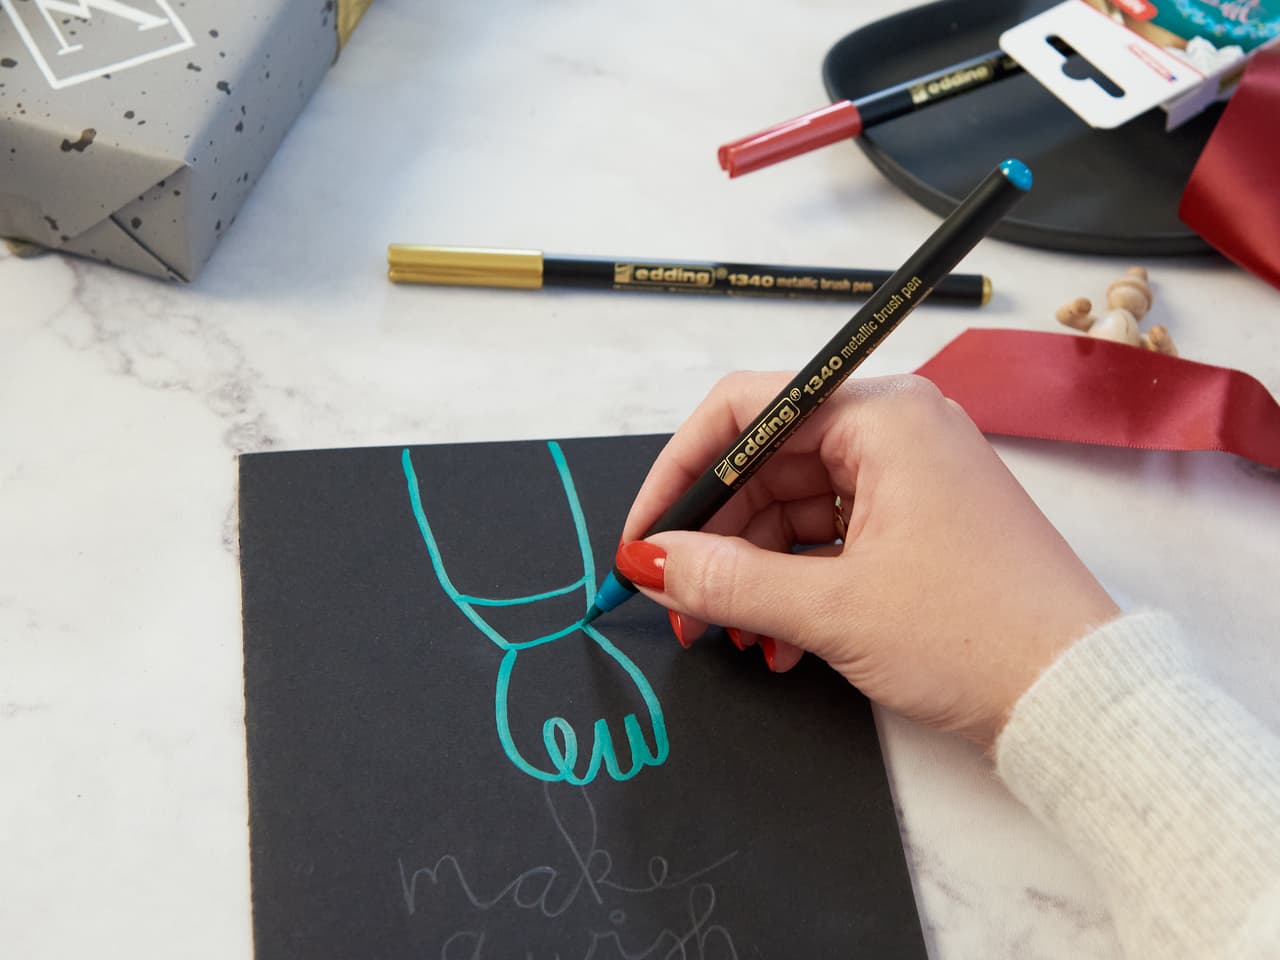 Eine Hand hält einen edding 1340 metallic Pinselstift mit wasserbasierter Tinte und zeichnet eine elegante türkisfarbene Schleife auf ein schwarzes Blatt Papier, während künstlerisches Zubehör verstreut ist.